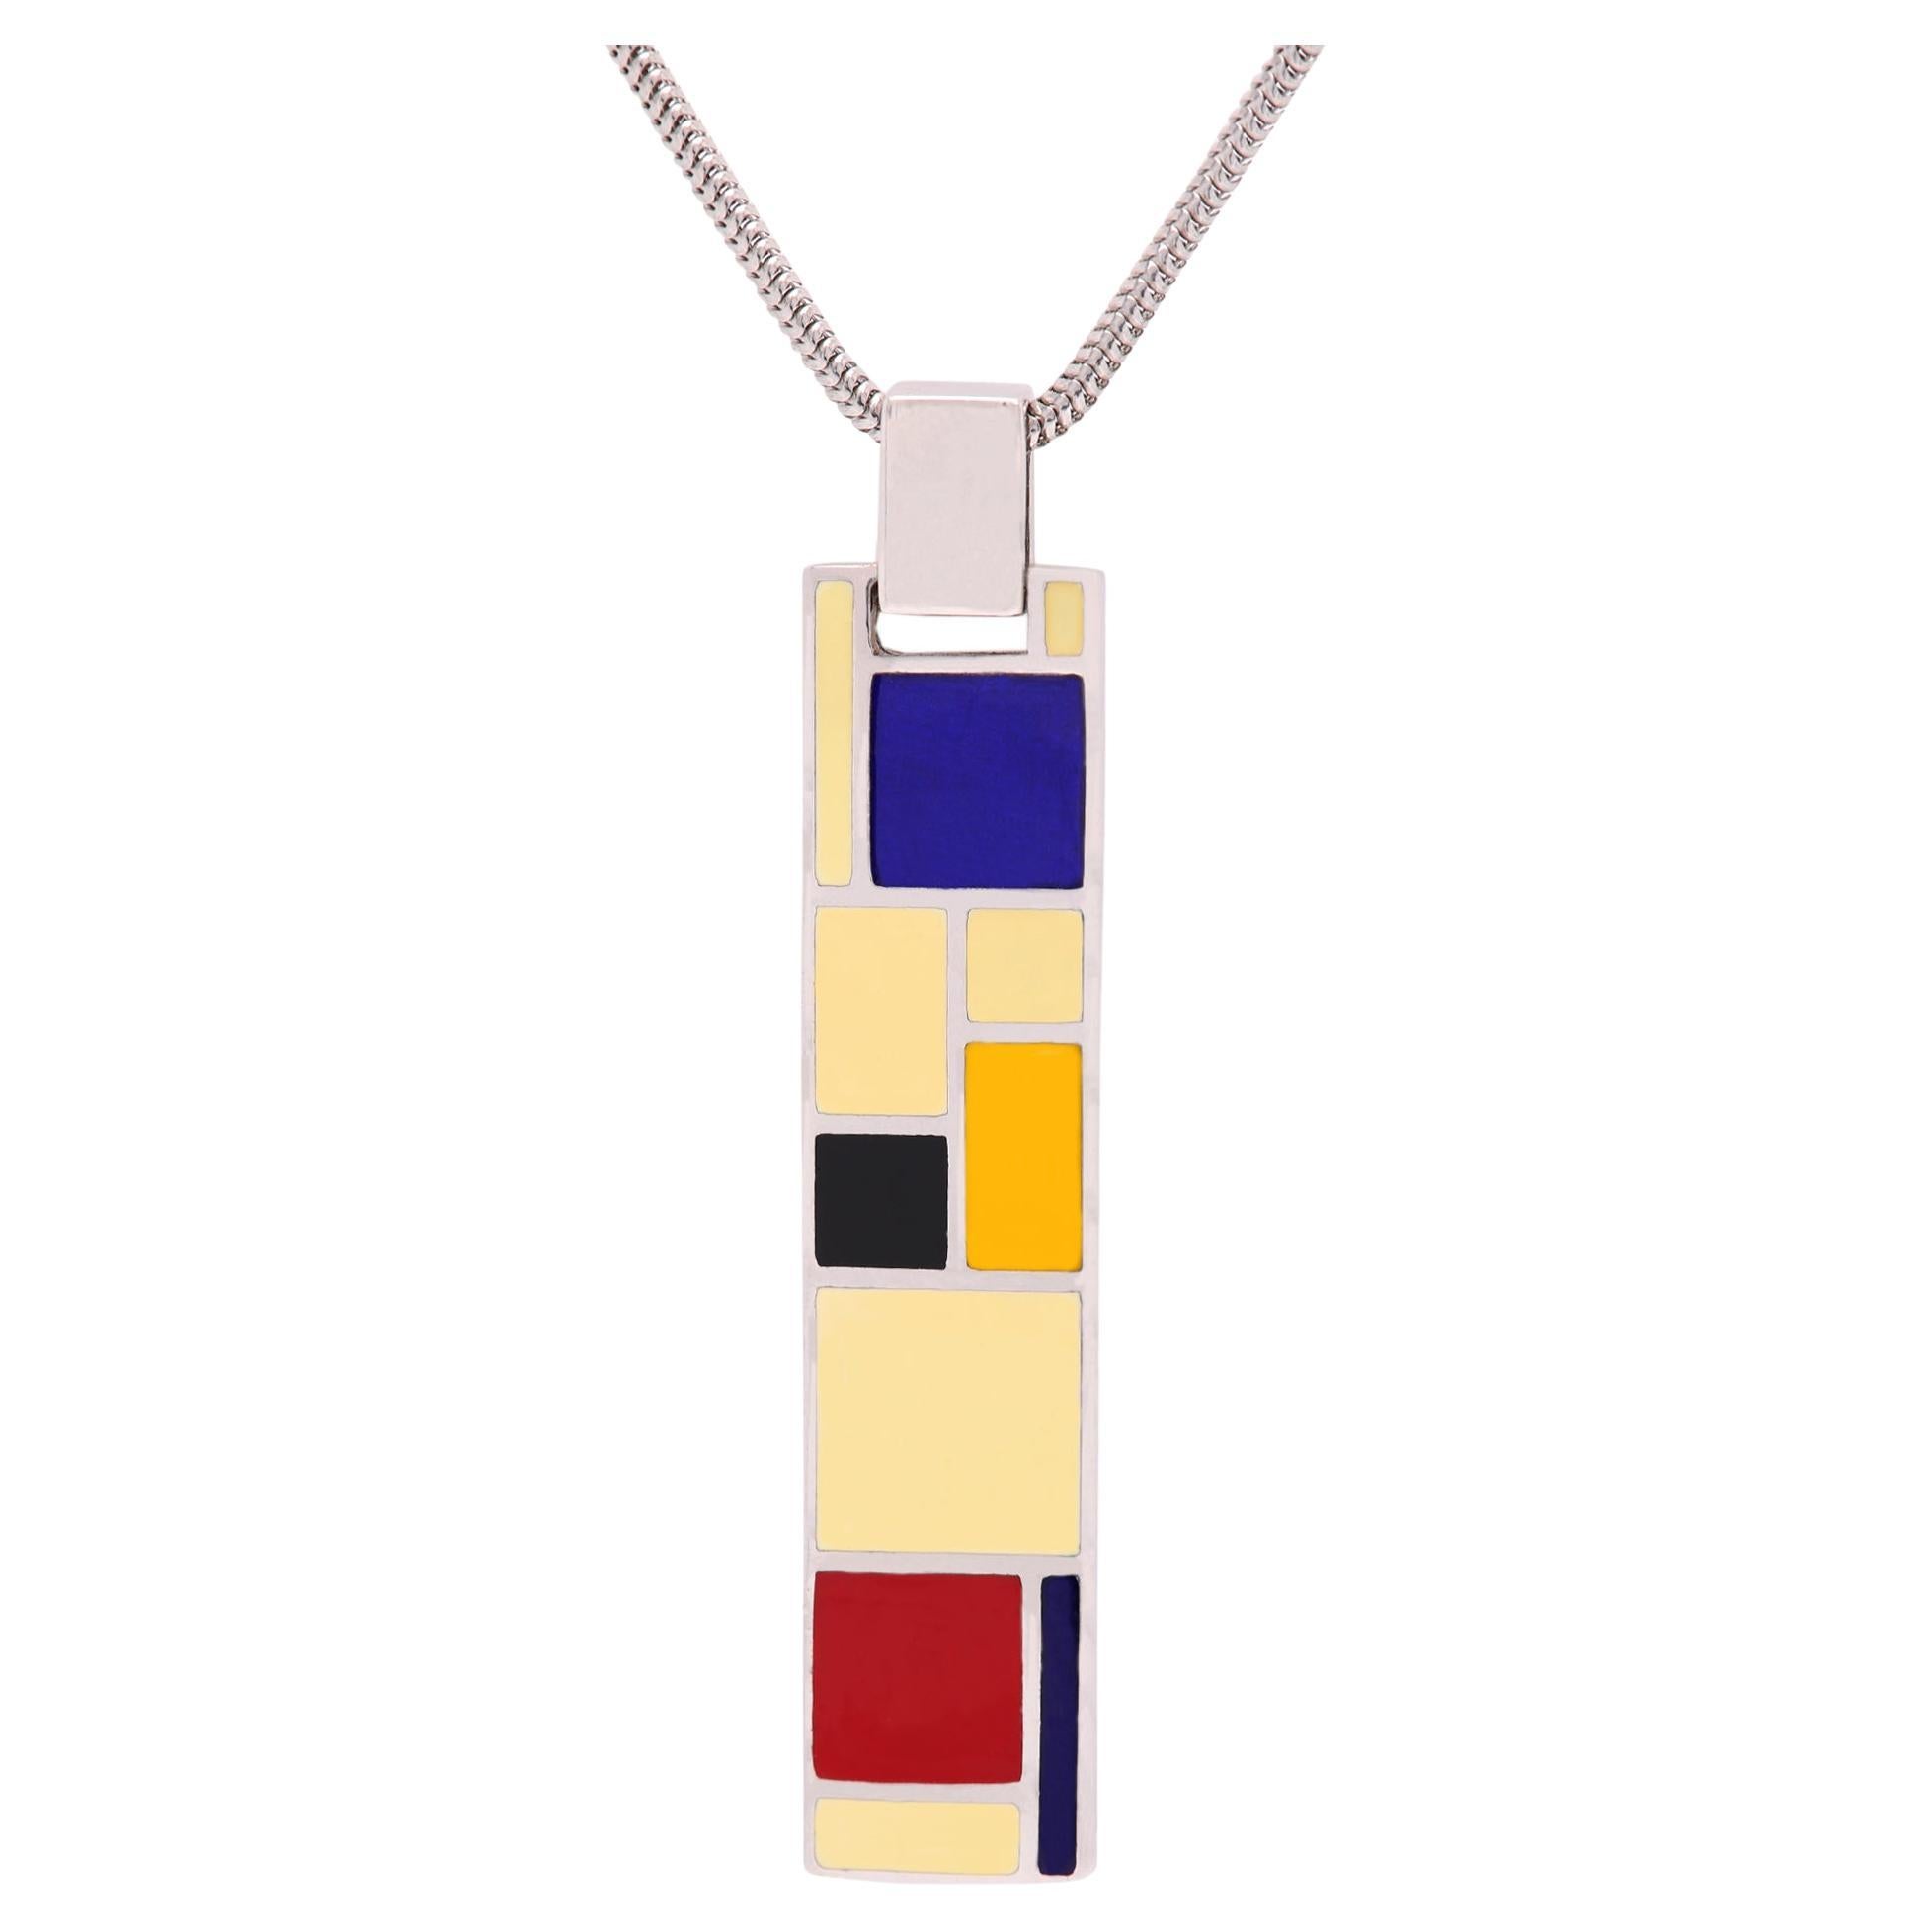 Mondrian Inspired Art Pendant Sterling Silver Enamel Fine Art Jewelry For Sale